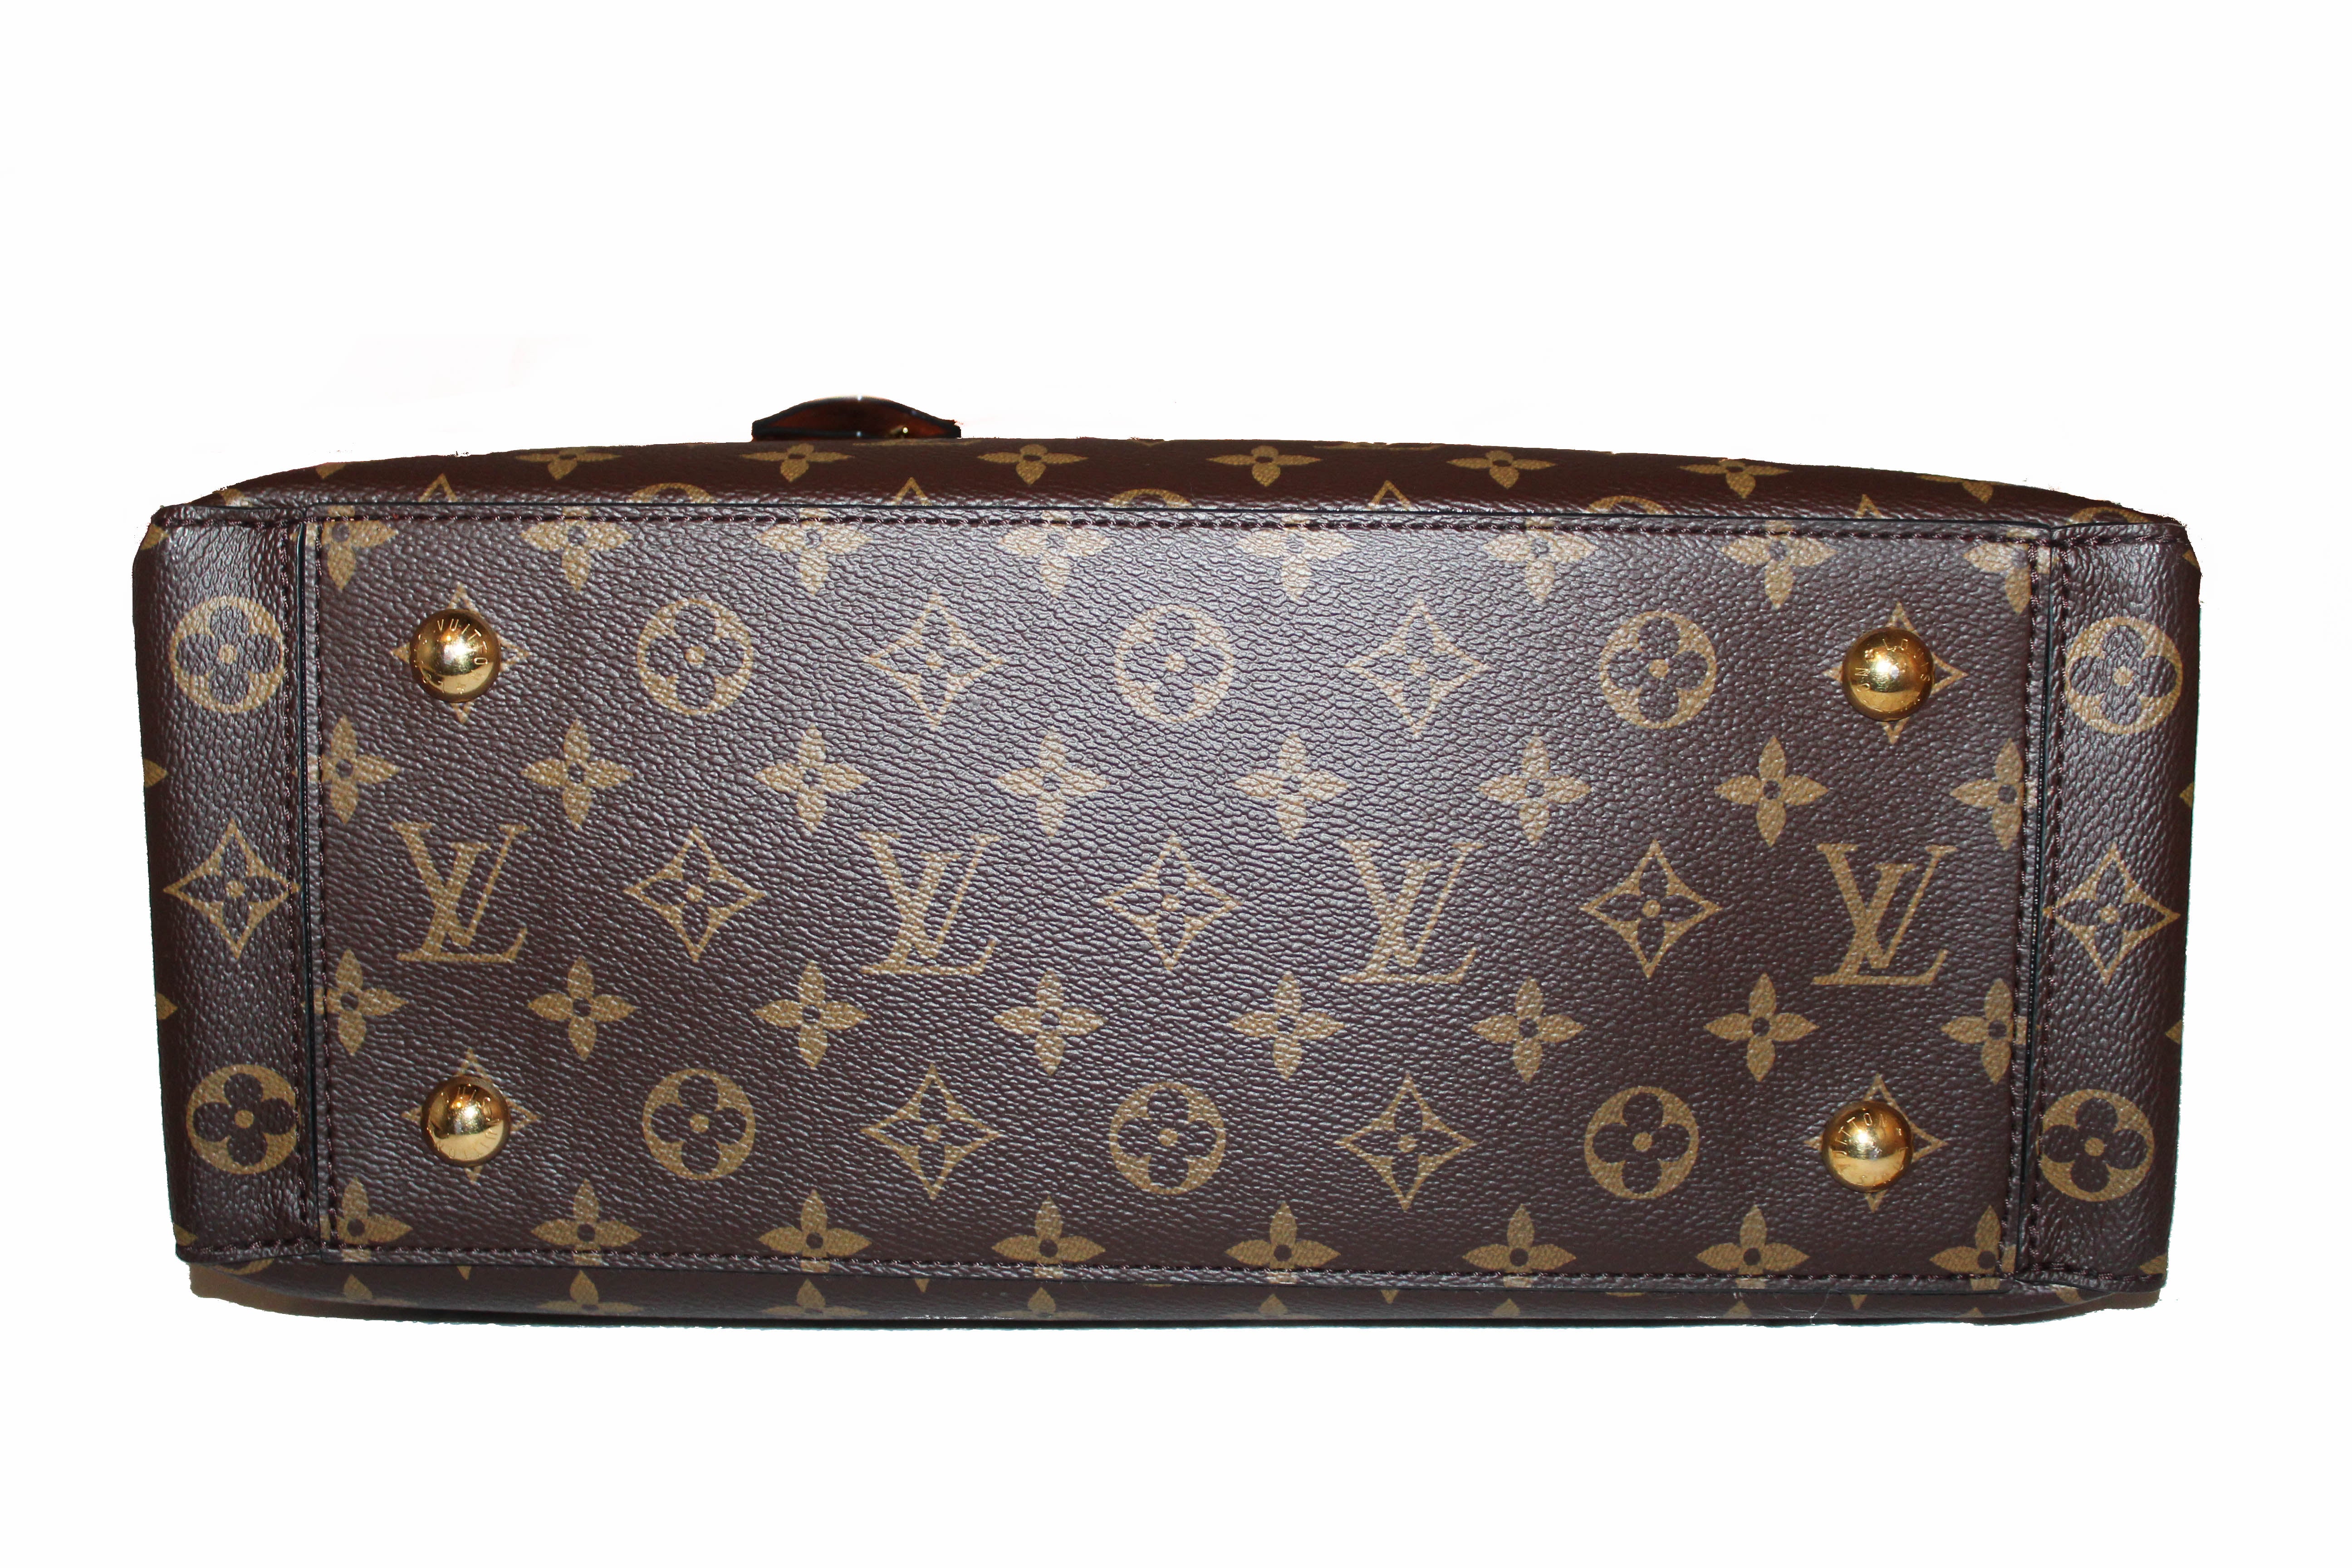 Authentic Louis Vuitton Caramel Monogram Flower Tote Handbag/Shoulder Bag